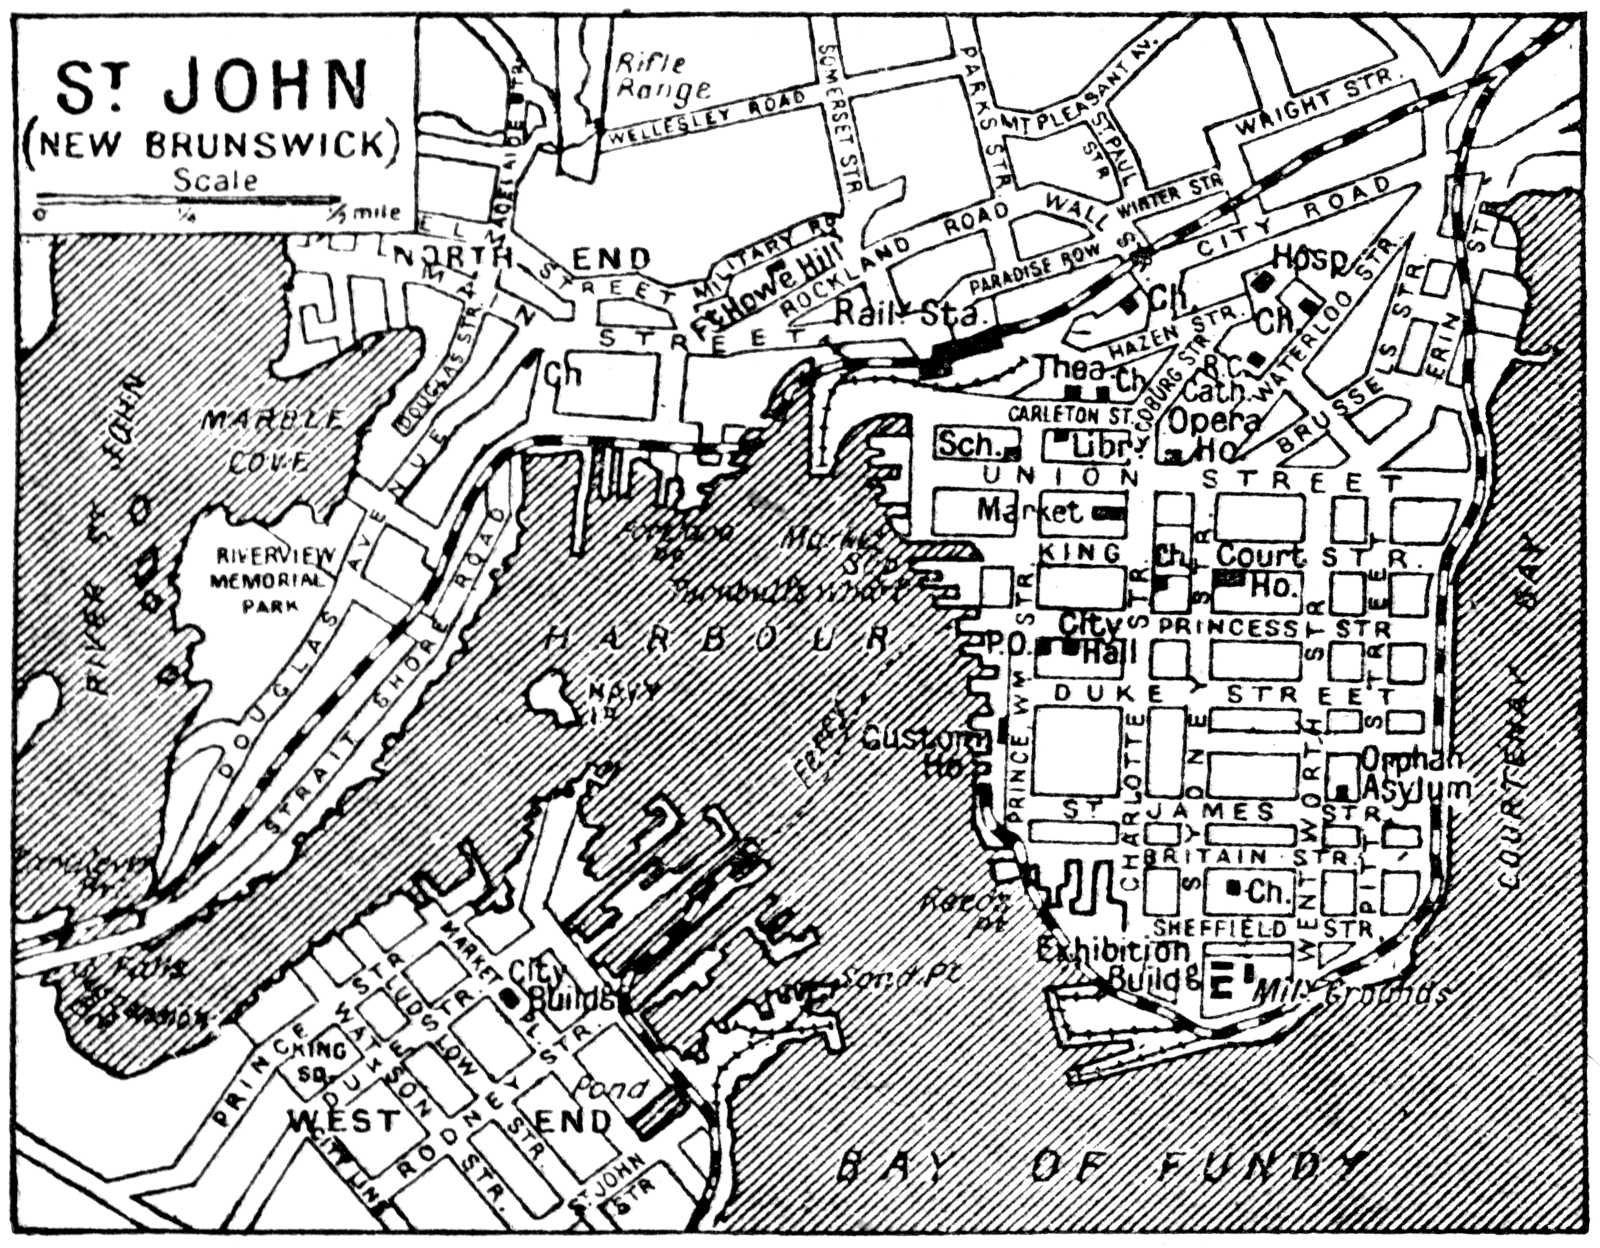 Сент стоун. Сент Джон на карте. Карт сент Стоун. Фотографии карты сент Стоун. Сент Джон те Баптист на карте.